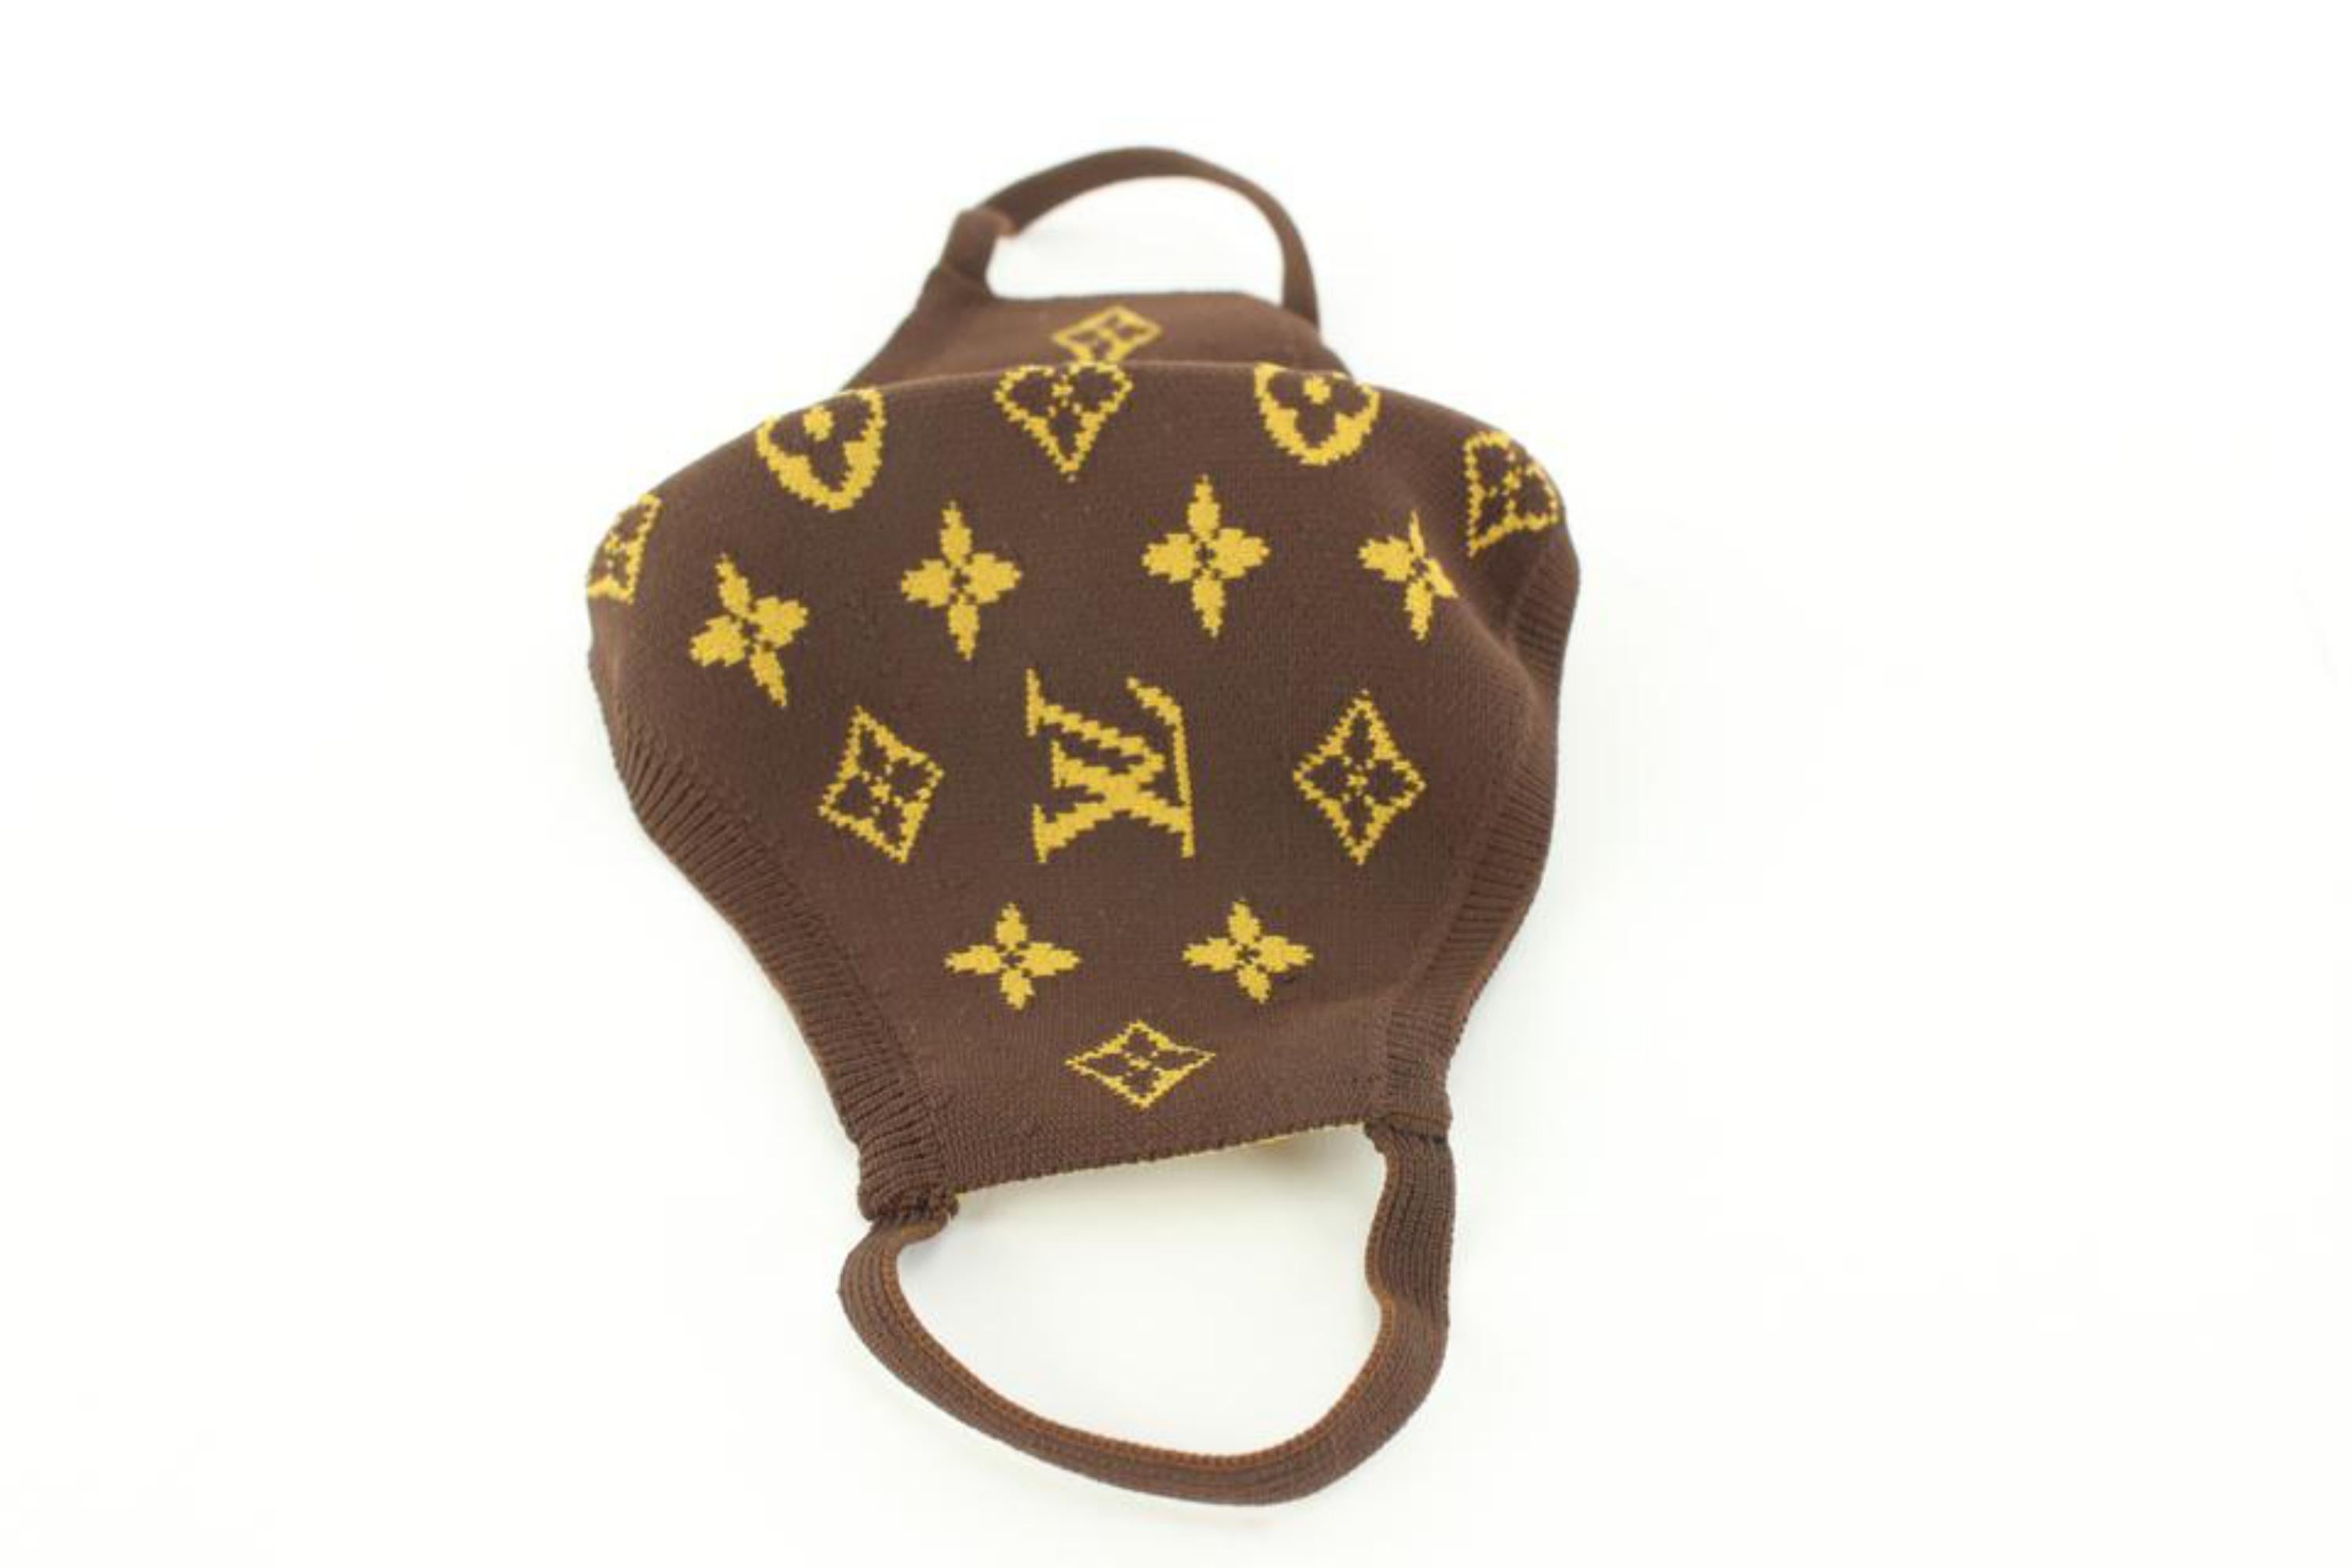 Louis Vuitton Monogram Knit Face Mask 94lz526s 2